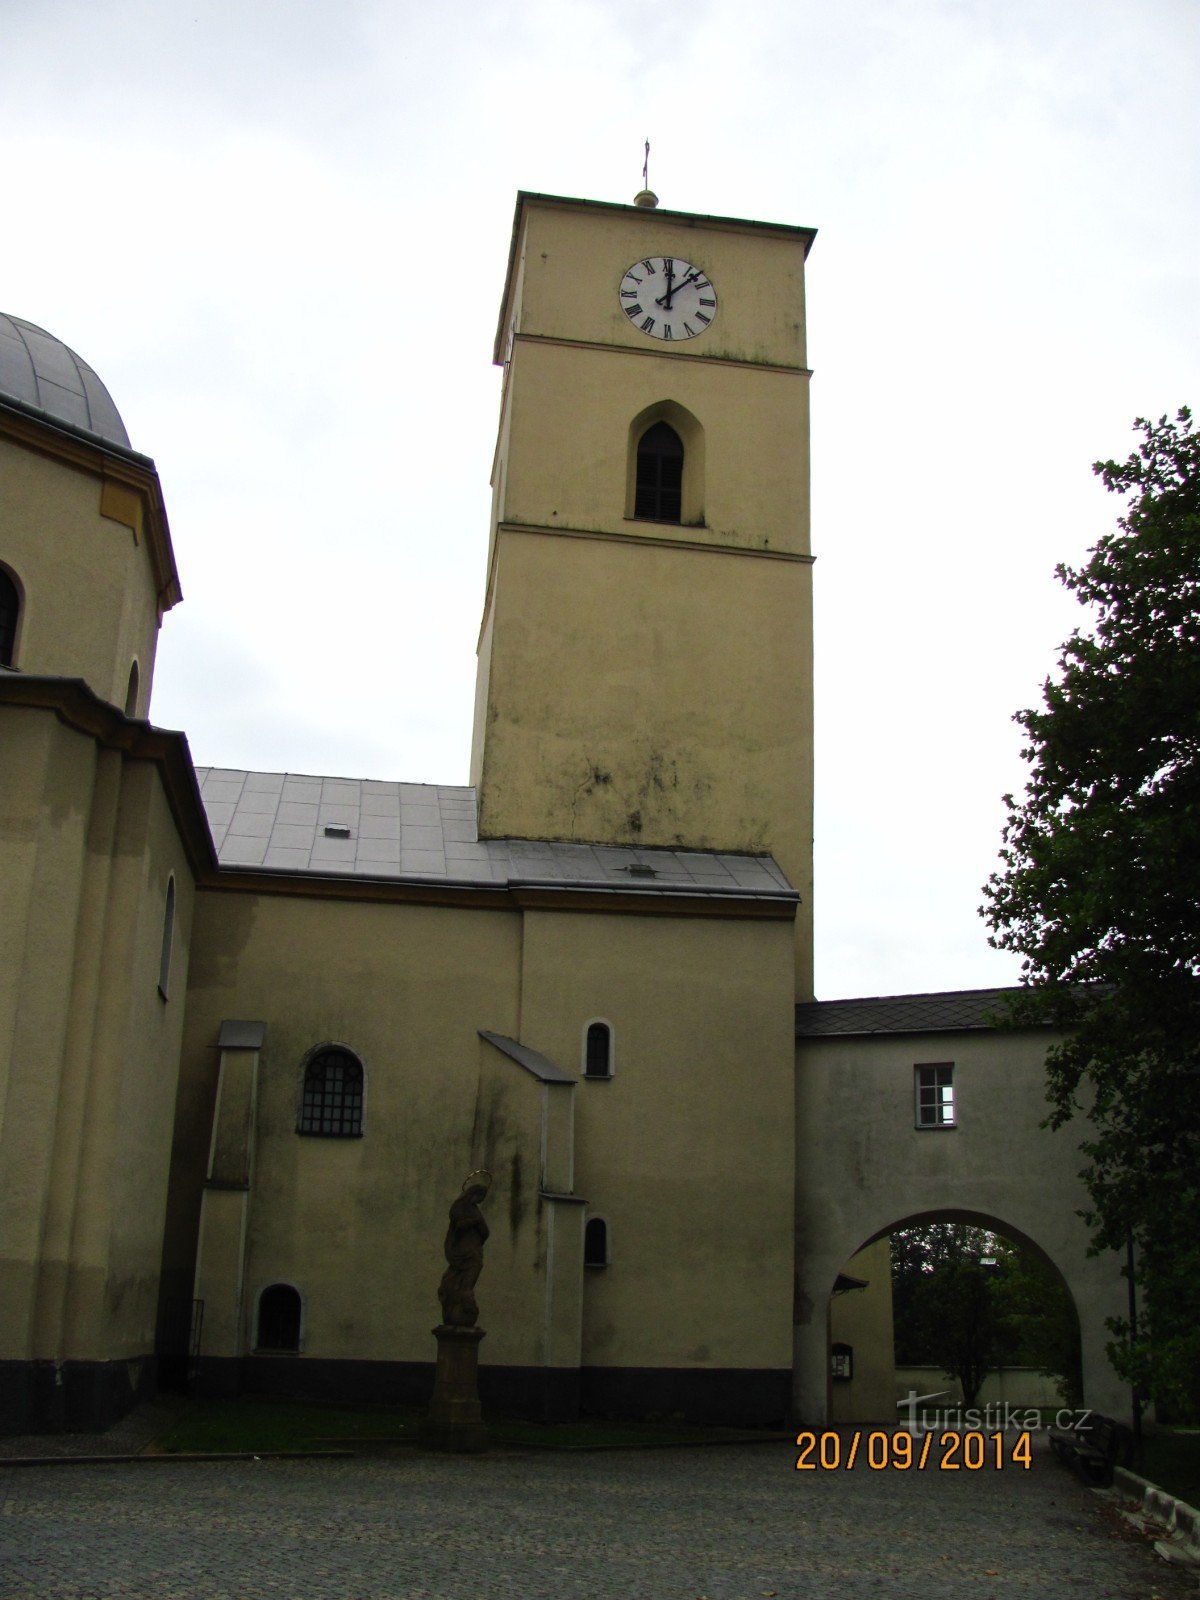 Церковь св. Катерины в Климковицах